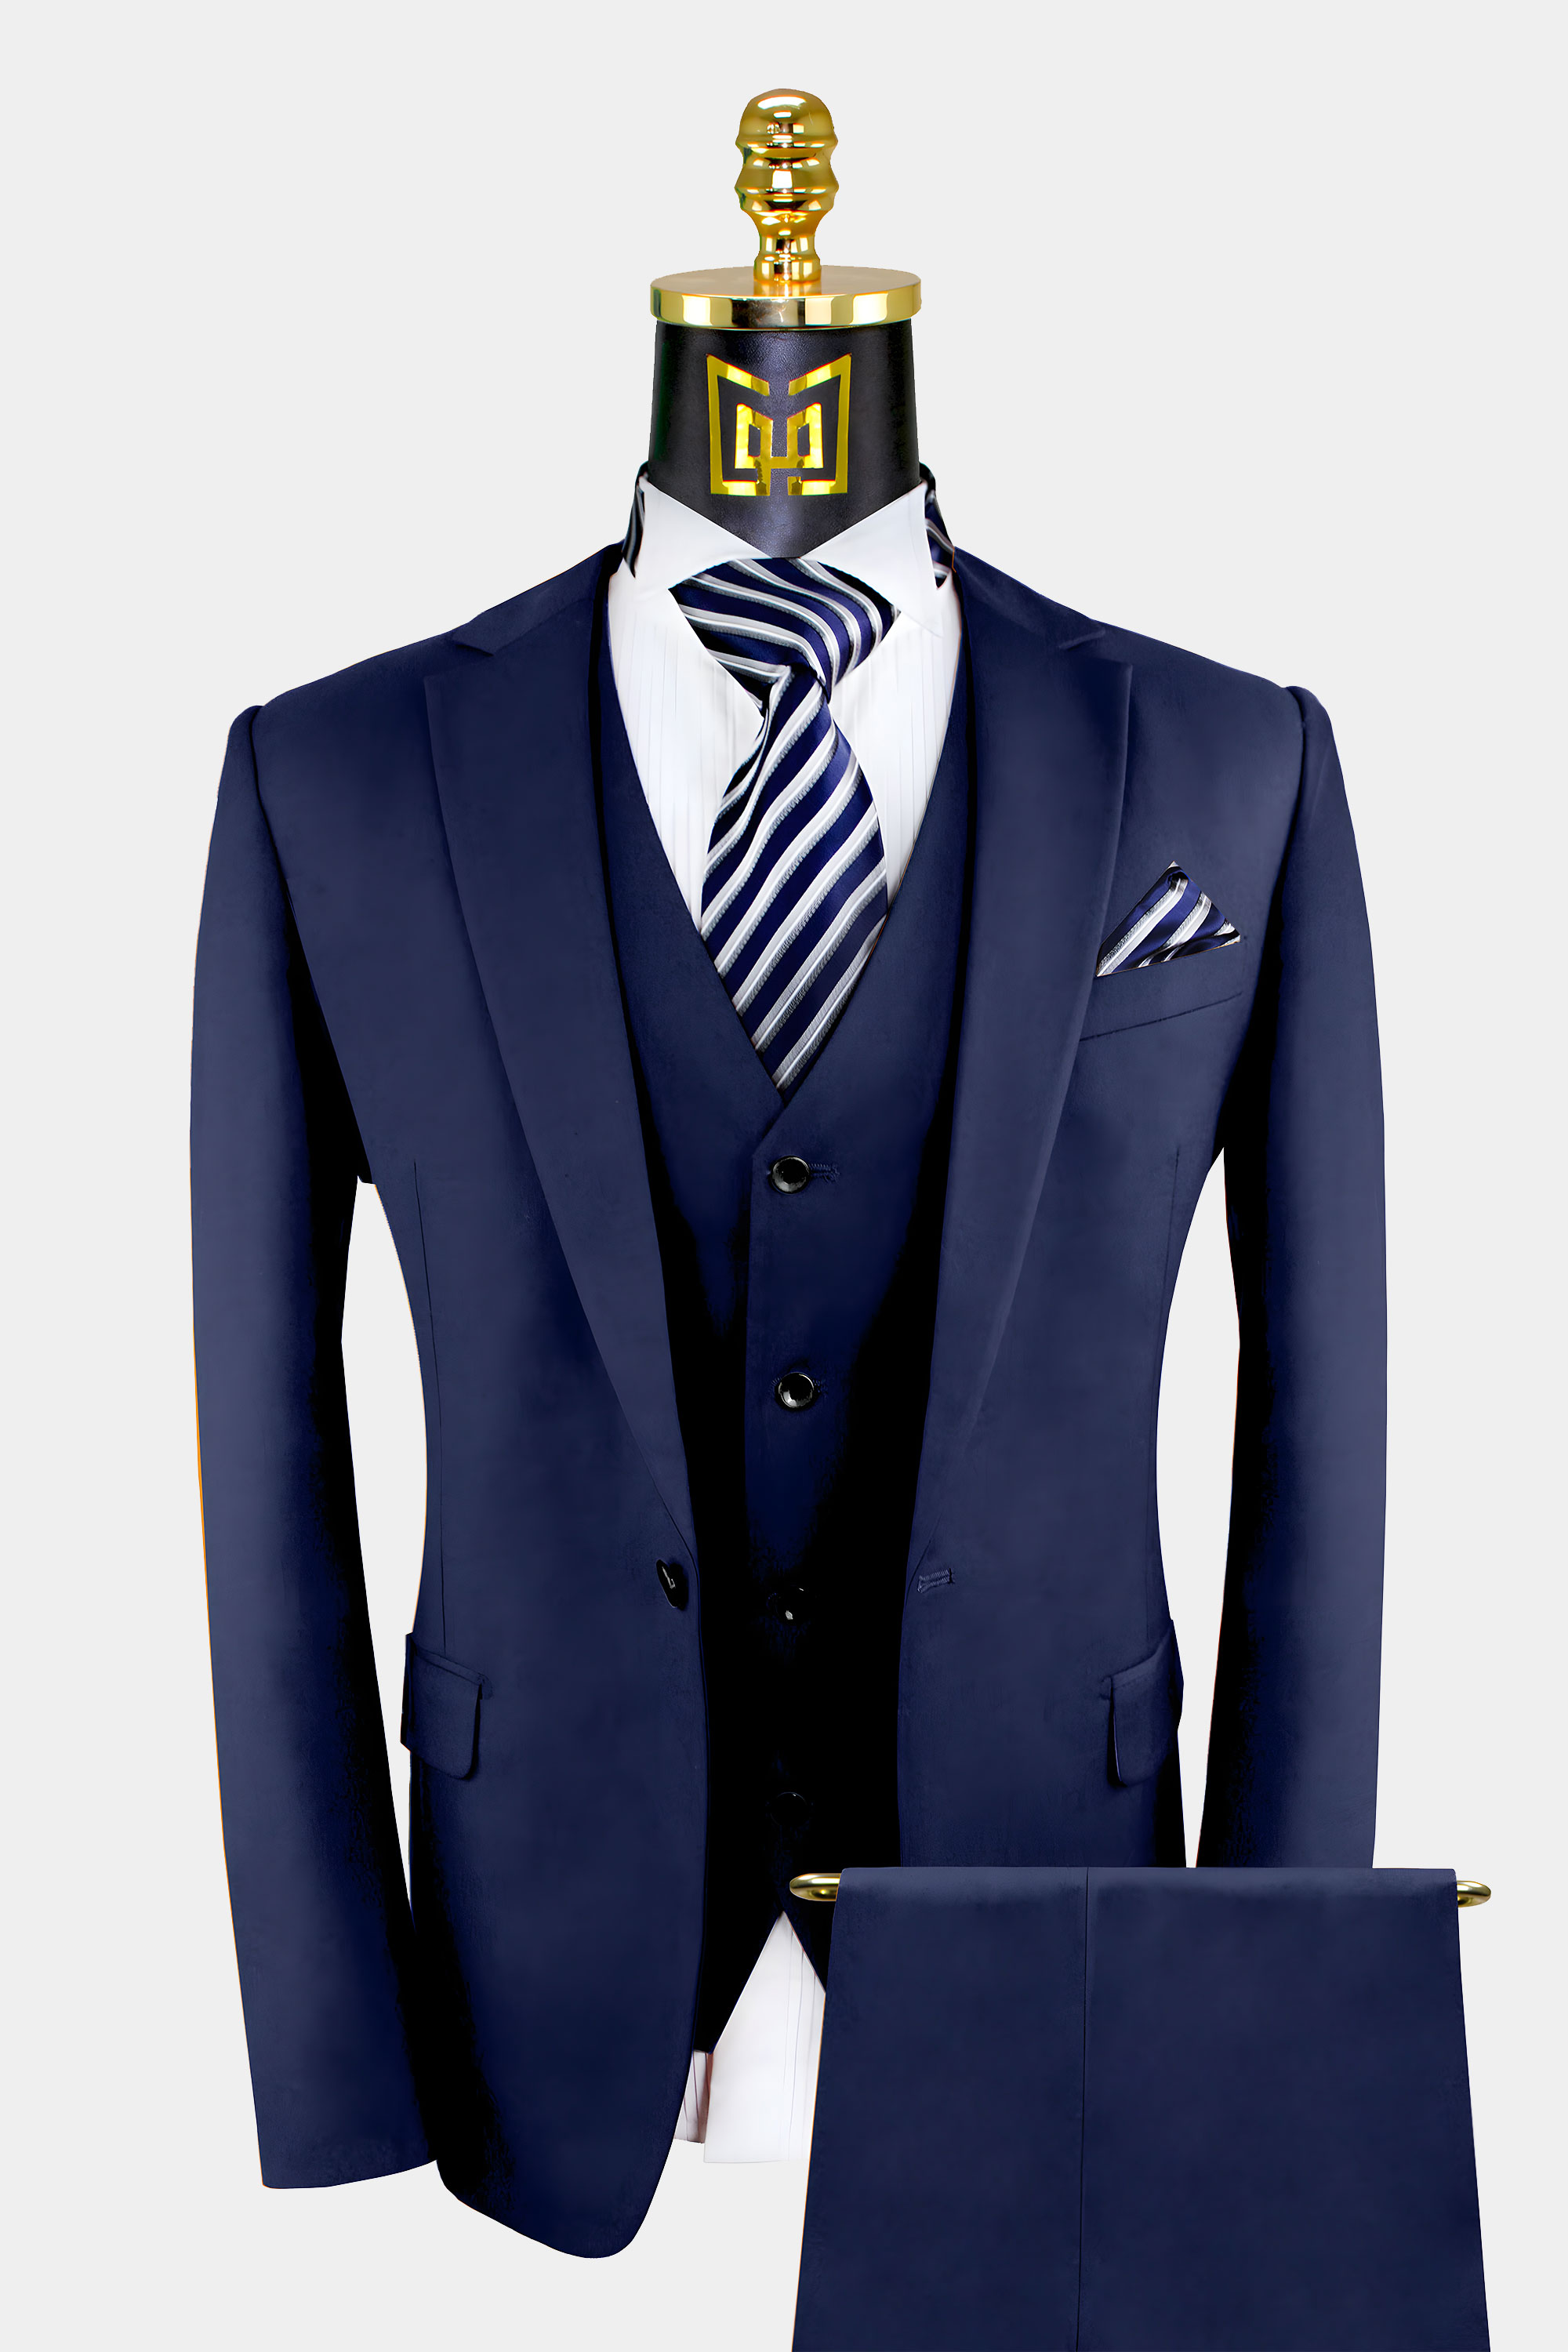 Mens Blue Suit Wedding Suit Groom Wear Suit 3 Piece Suit Two Button Suit Party Wear Suit For Men